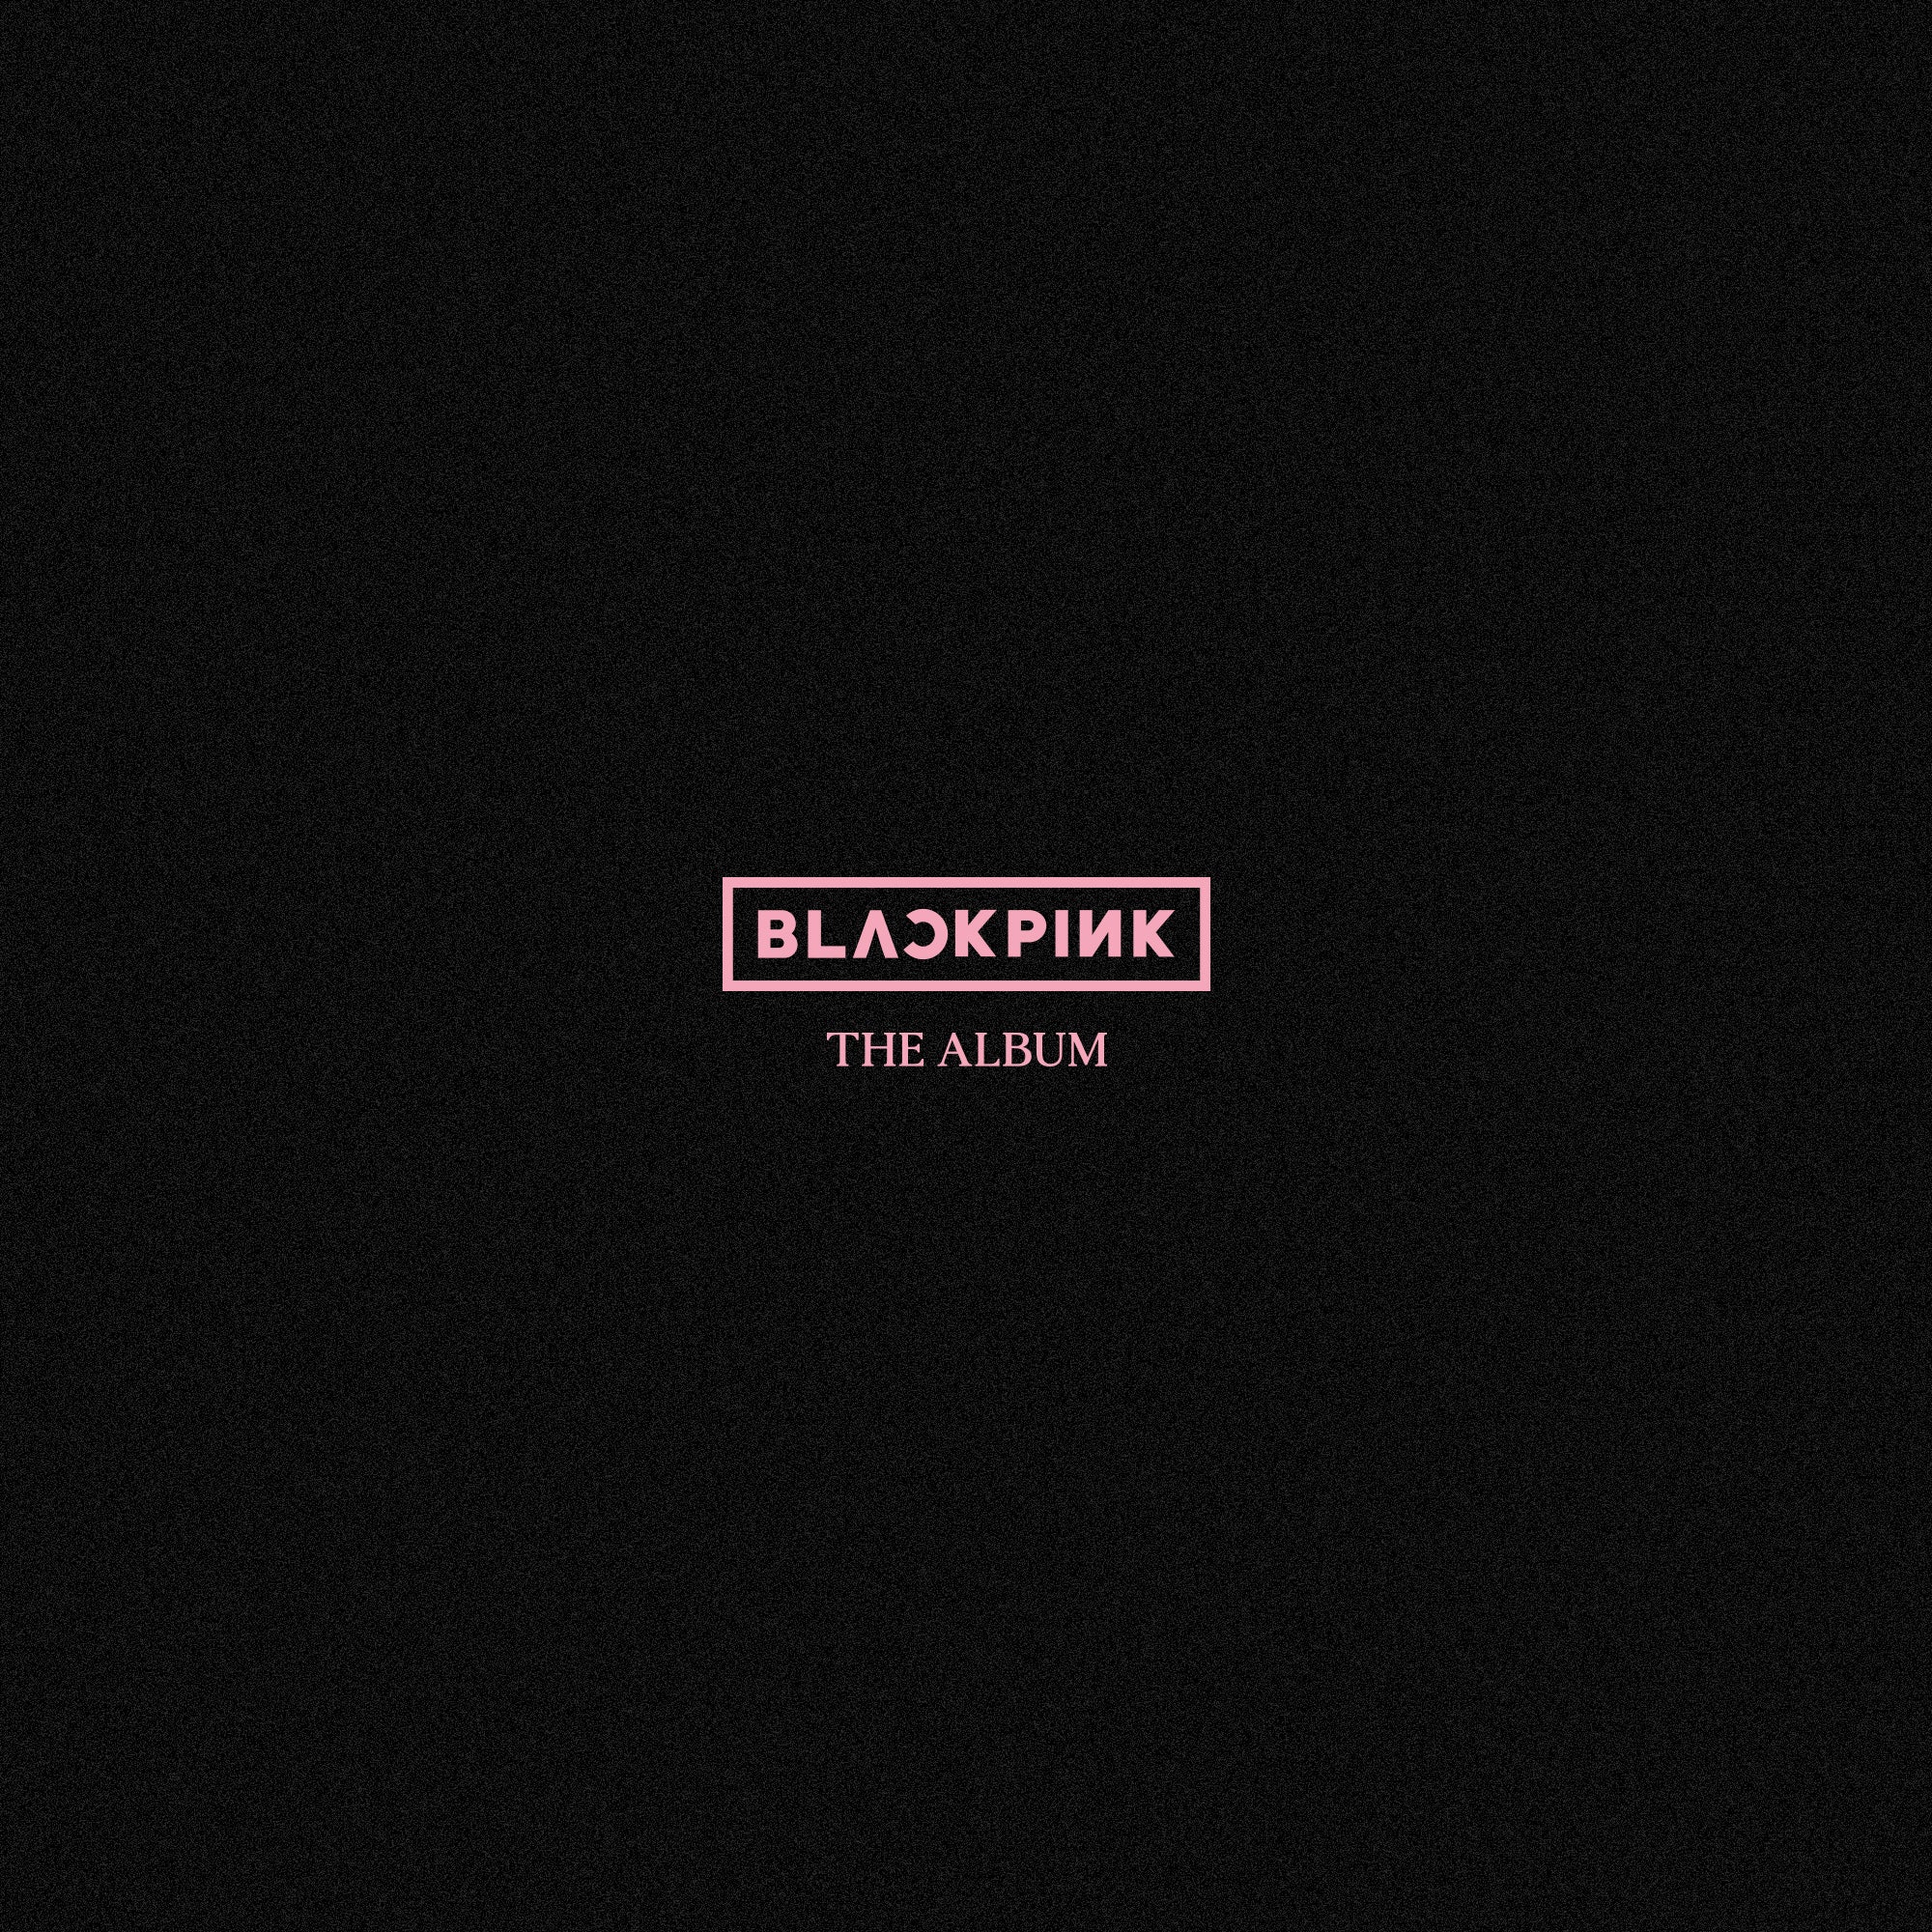 Kshopina - Blackpink - The Album - Saudi Arabia - Riyadh - Set 3